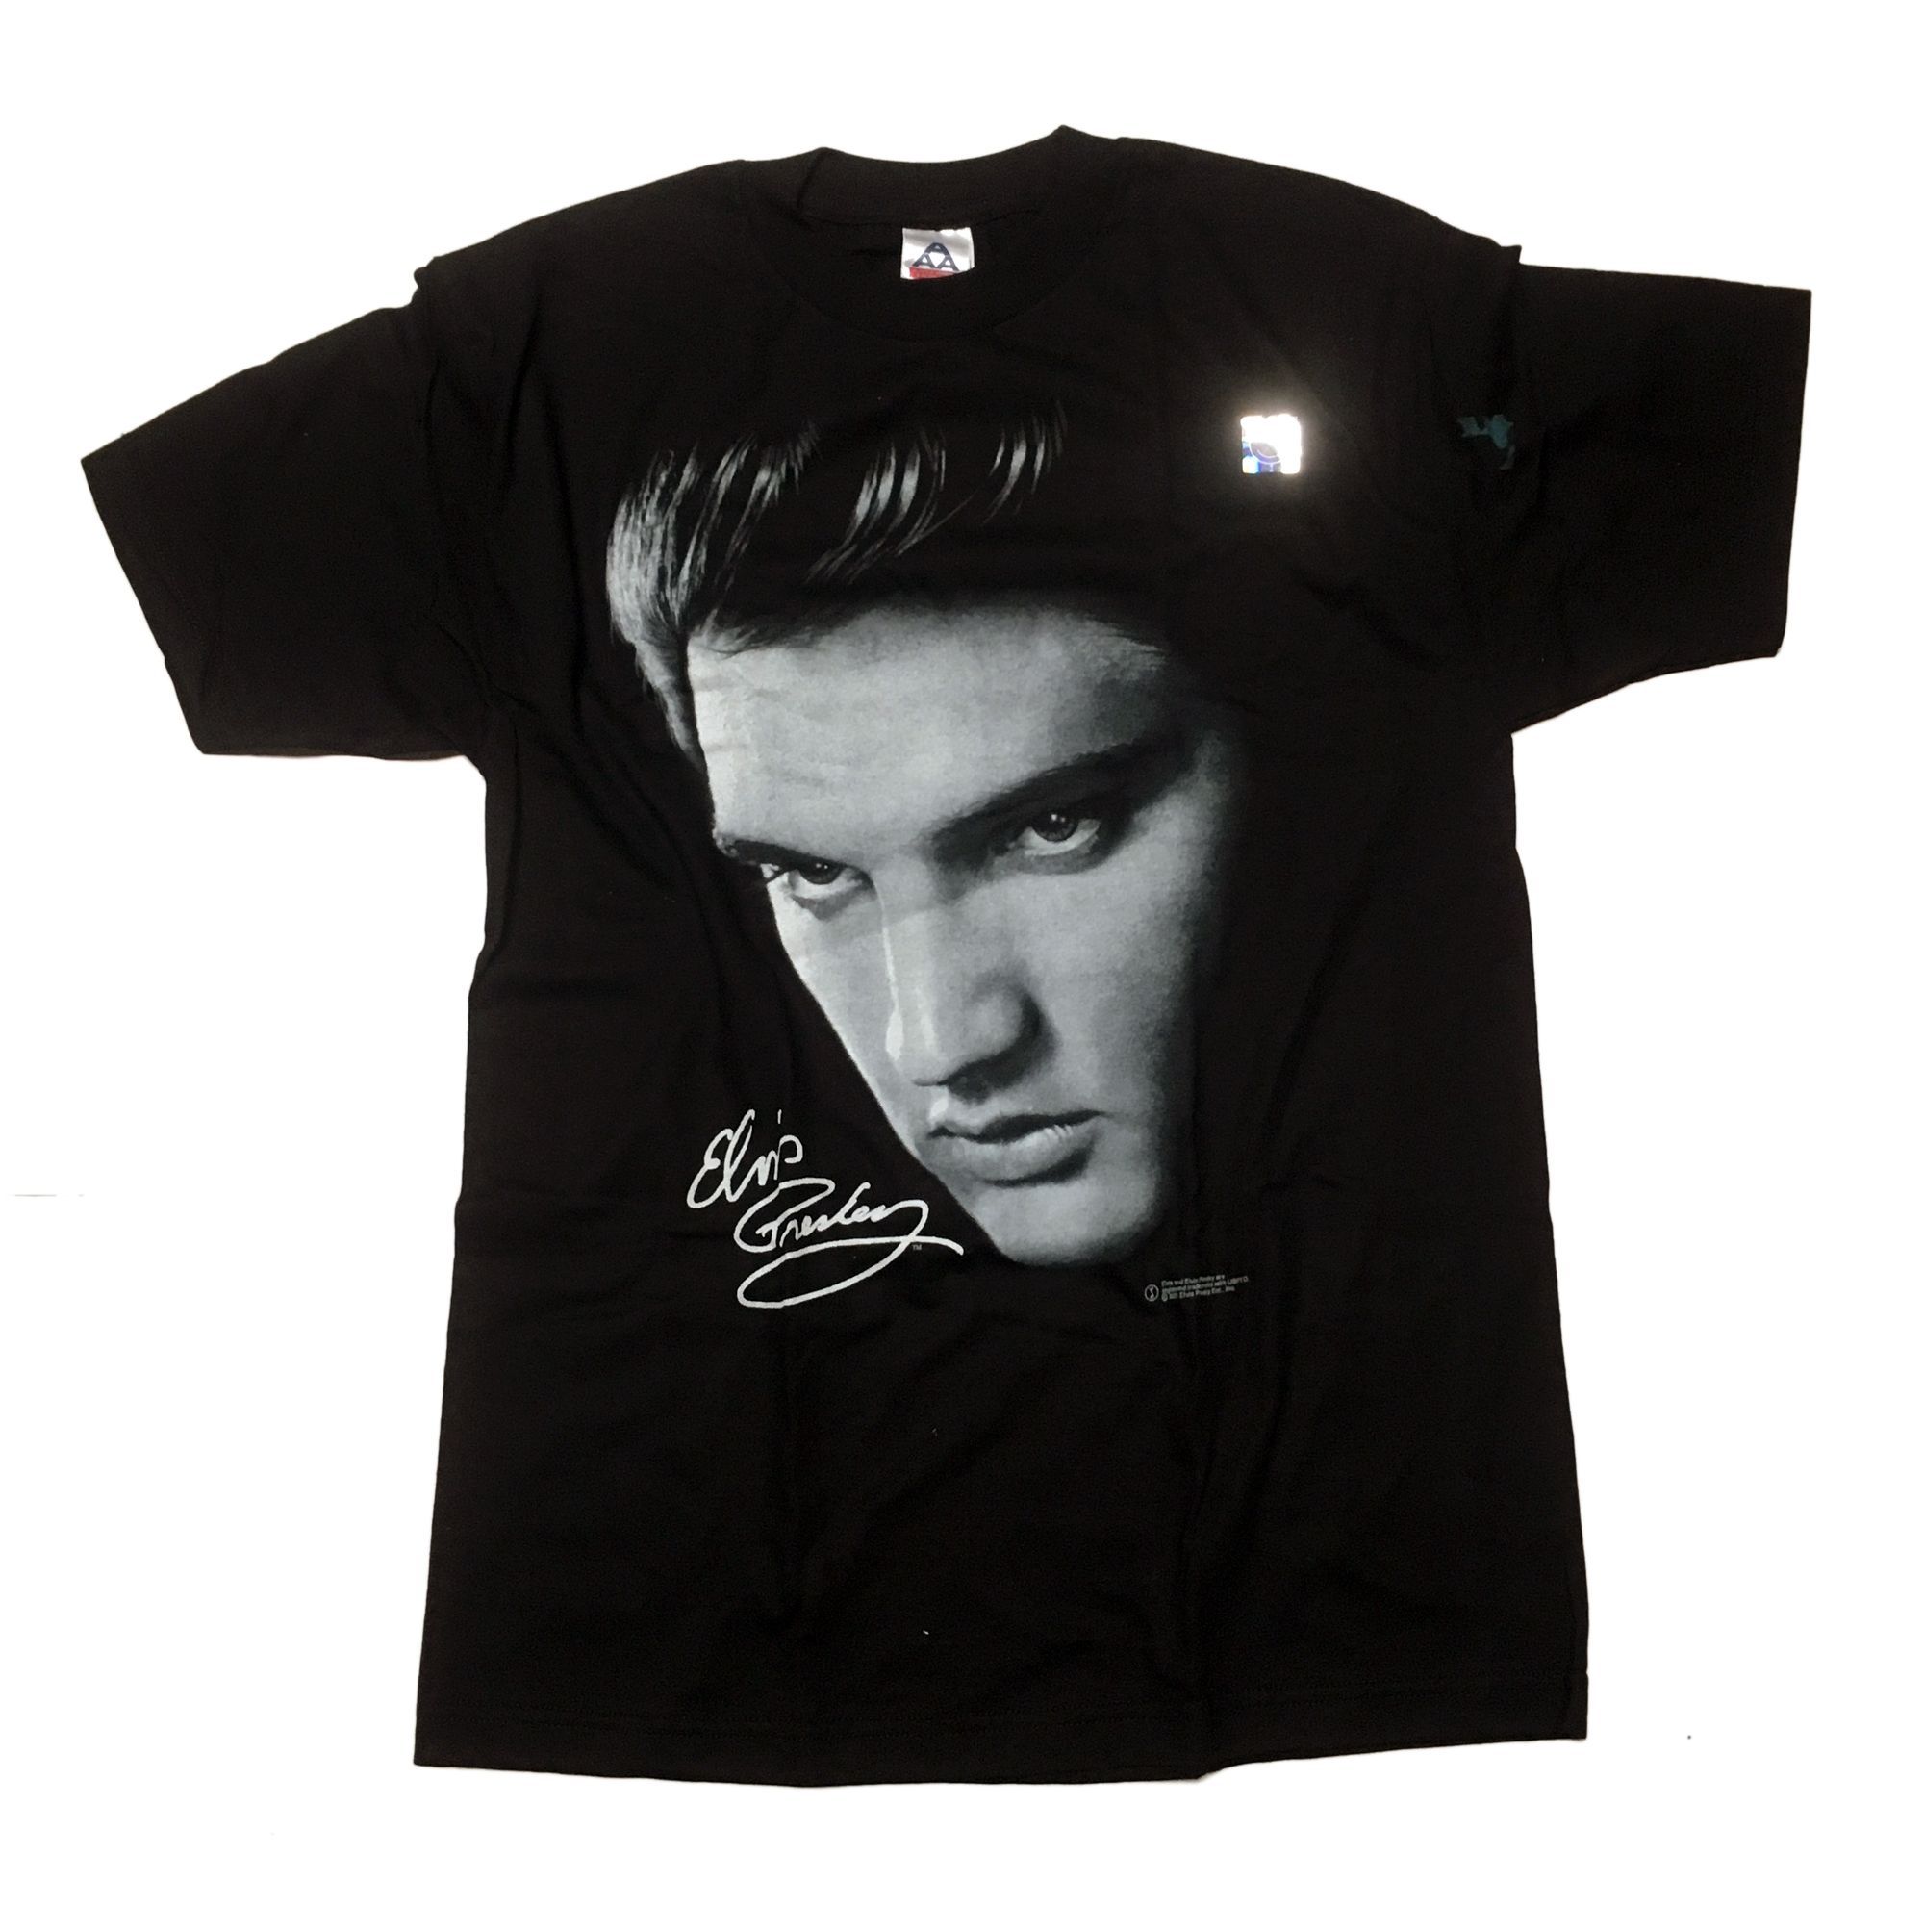 Toepassen hoofdpijn Roest Elvis Presley 'Signature' T-shirt